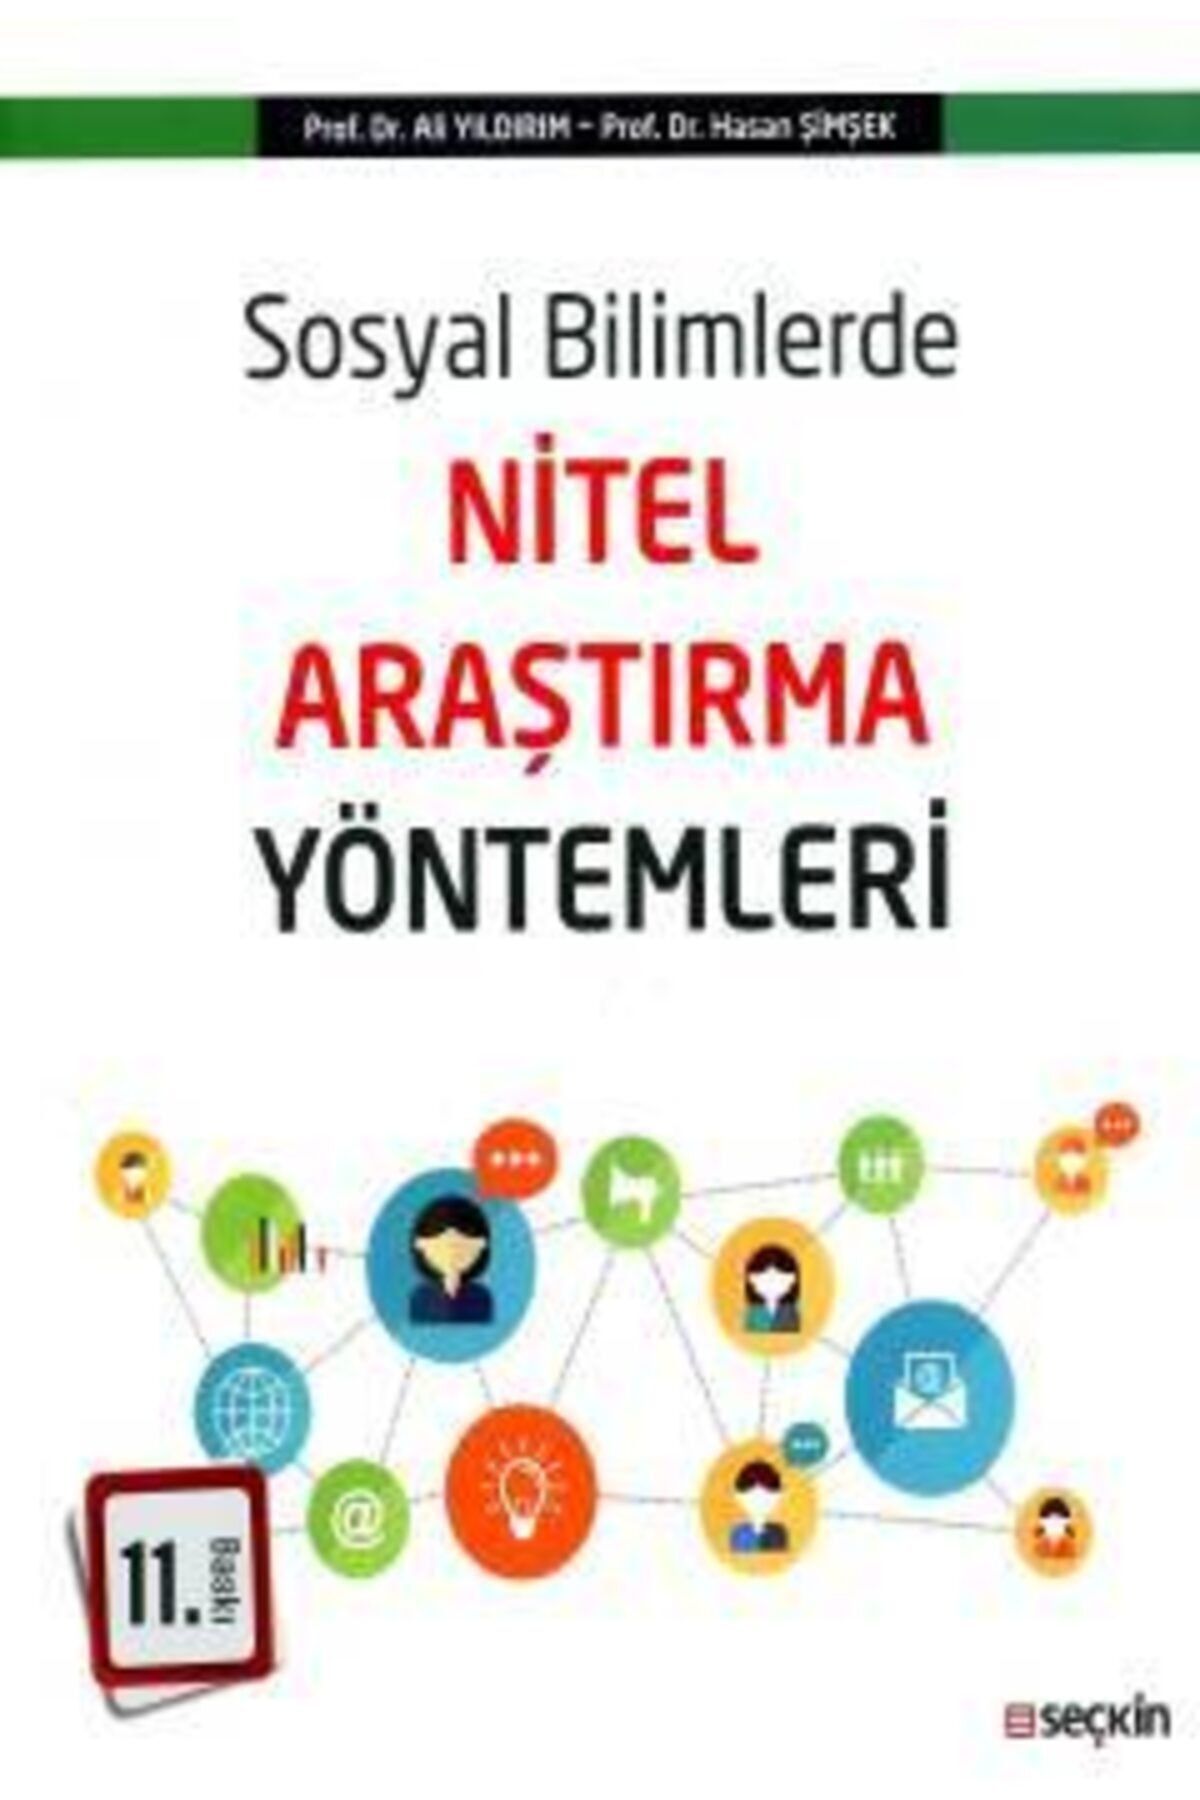 Seçkin Yayınları Sosyal Bilimlerde Nitel Araştırma Yöntemleri - Prof. Dr. Ali Yıldırım, Prof. Dr. Hasan Şimşek